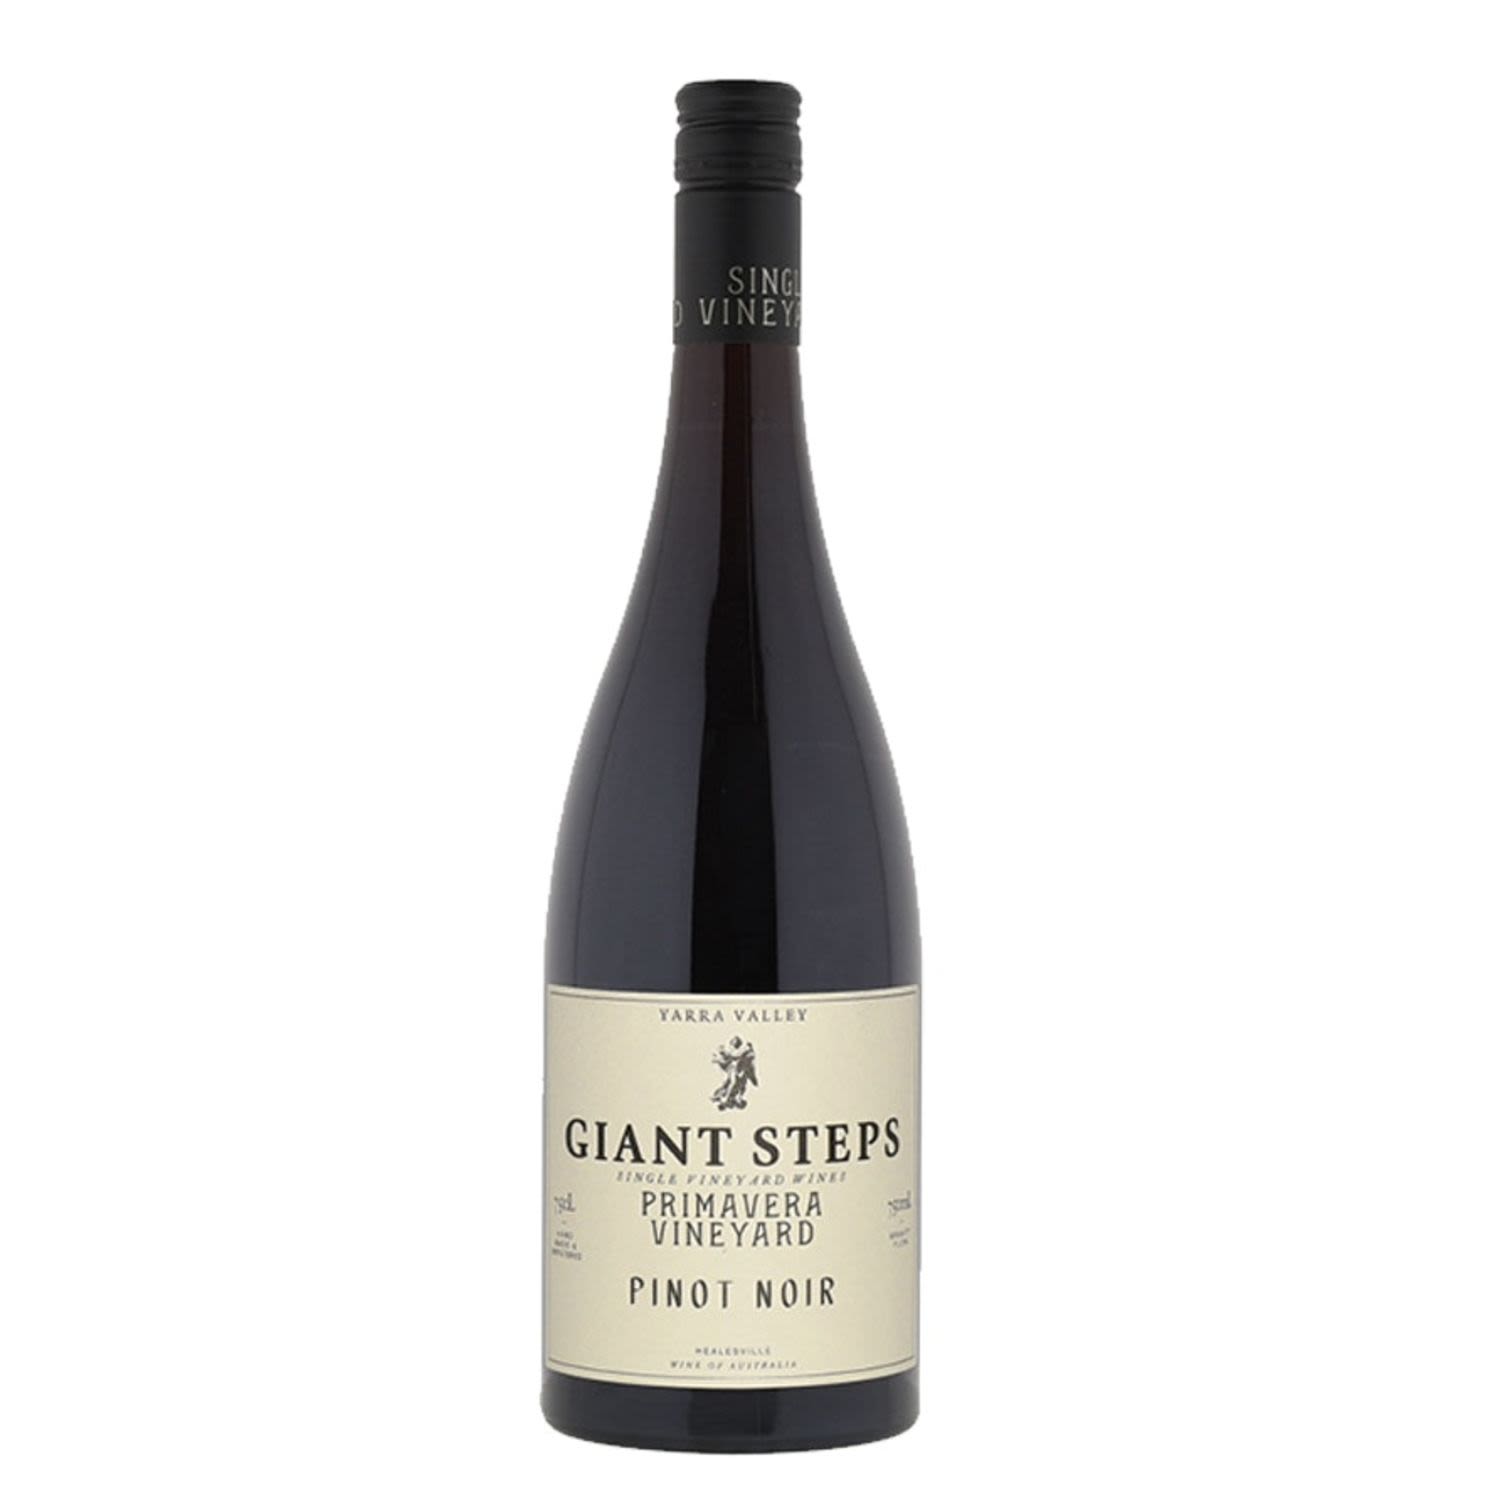 Giant Steps Primavera Vineyard Pinot Noir 750mL Bottle